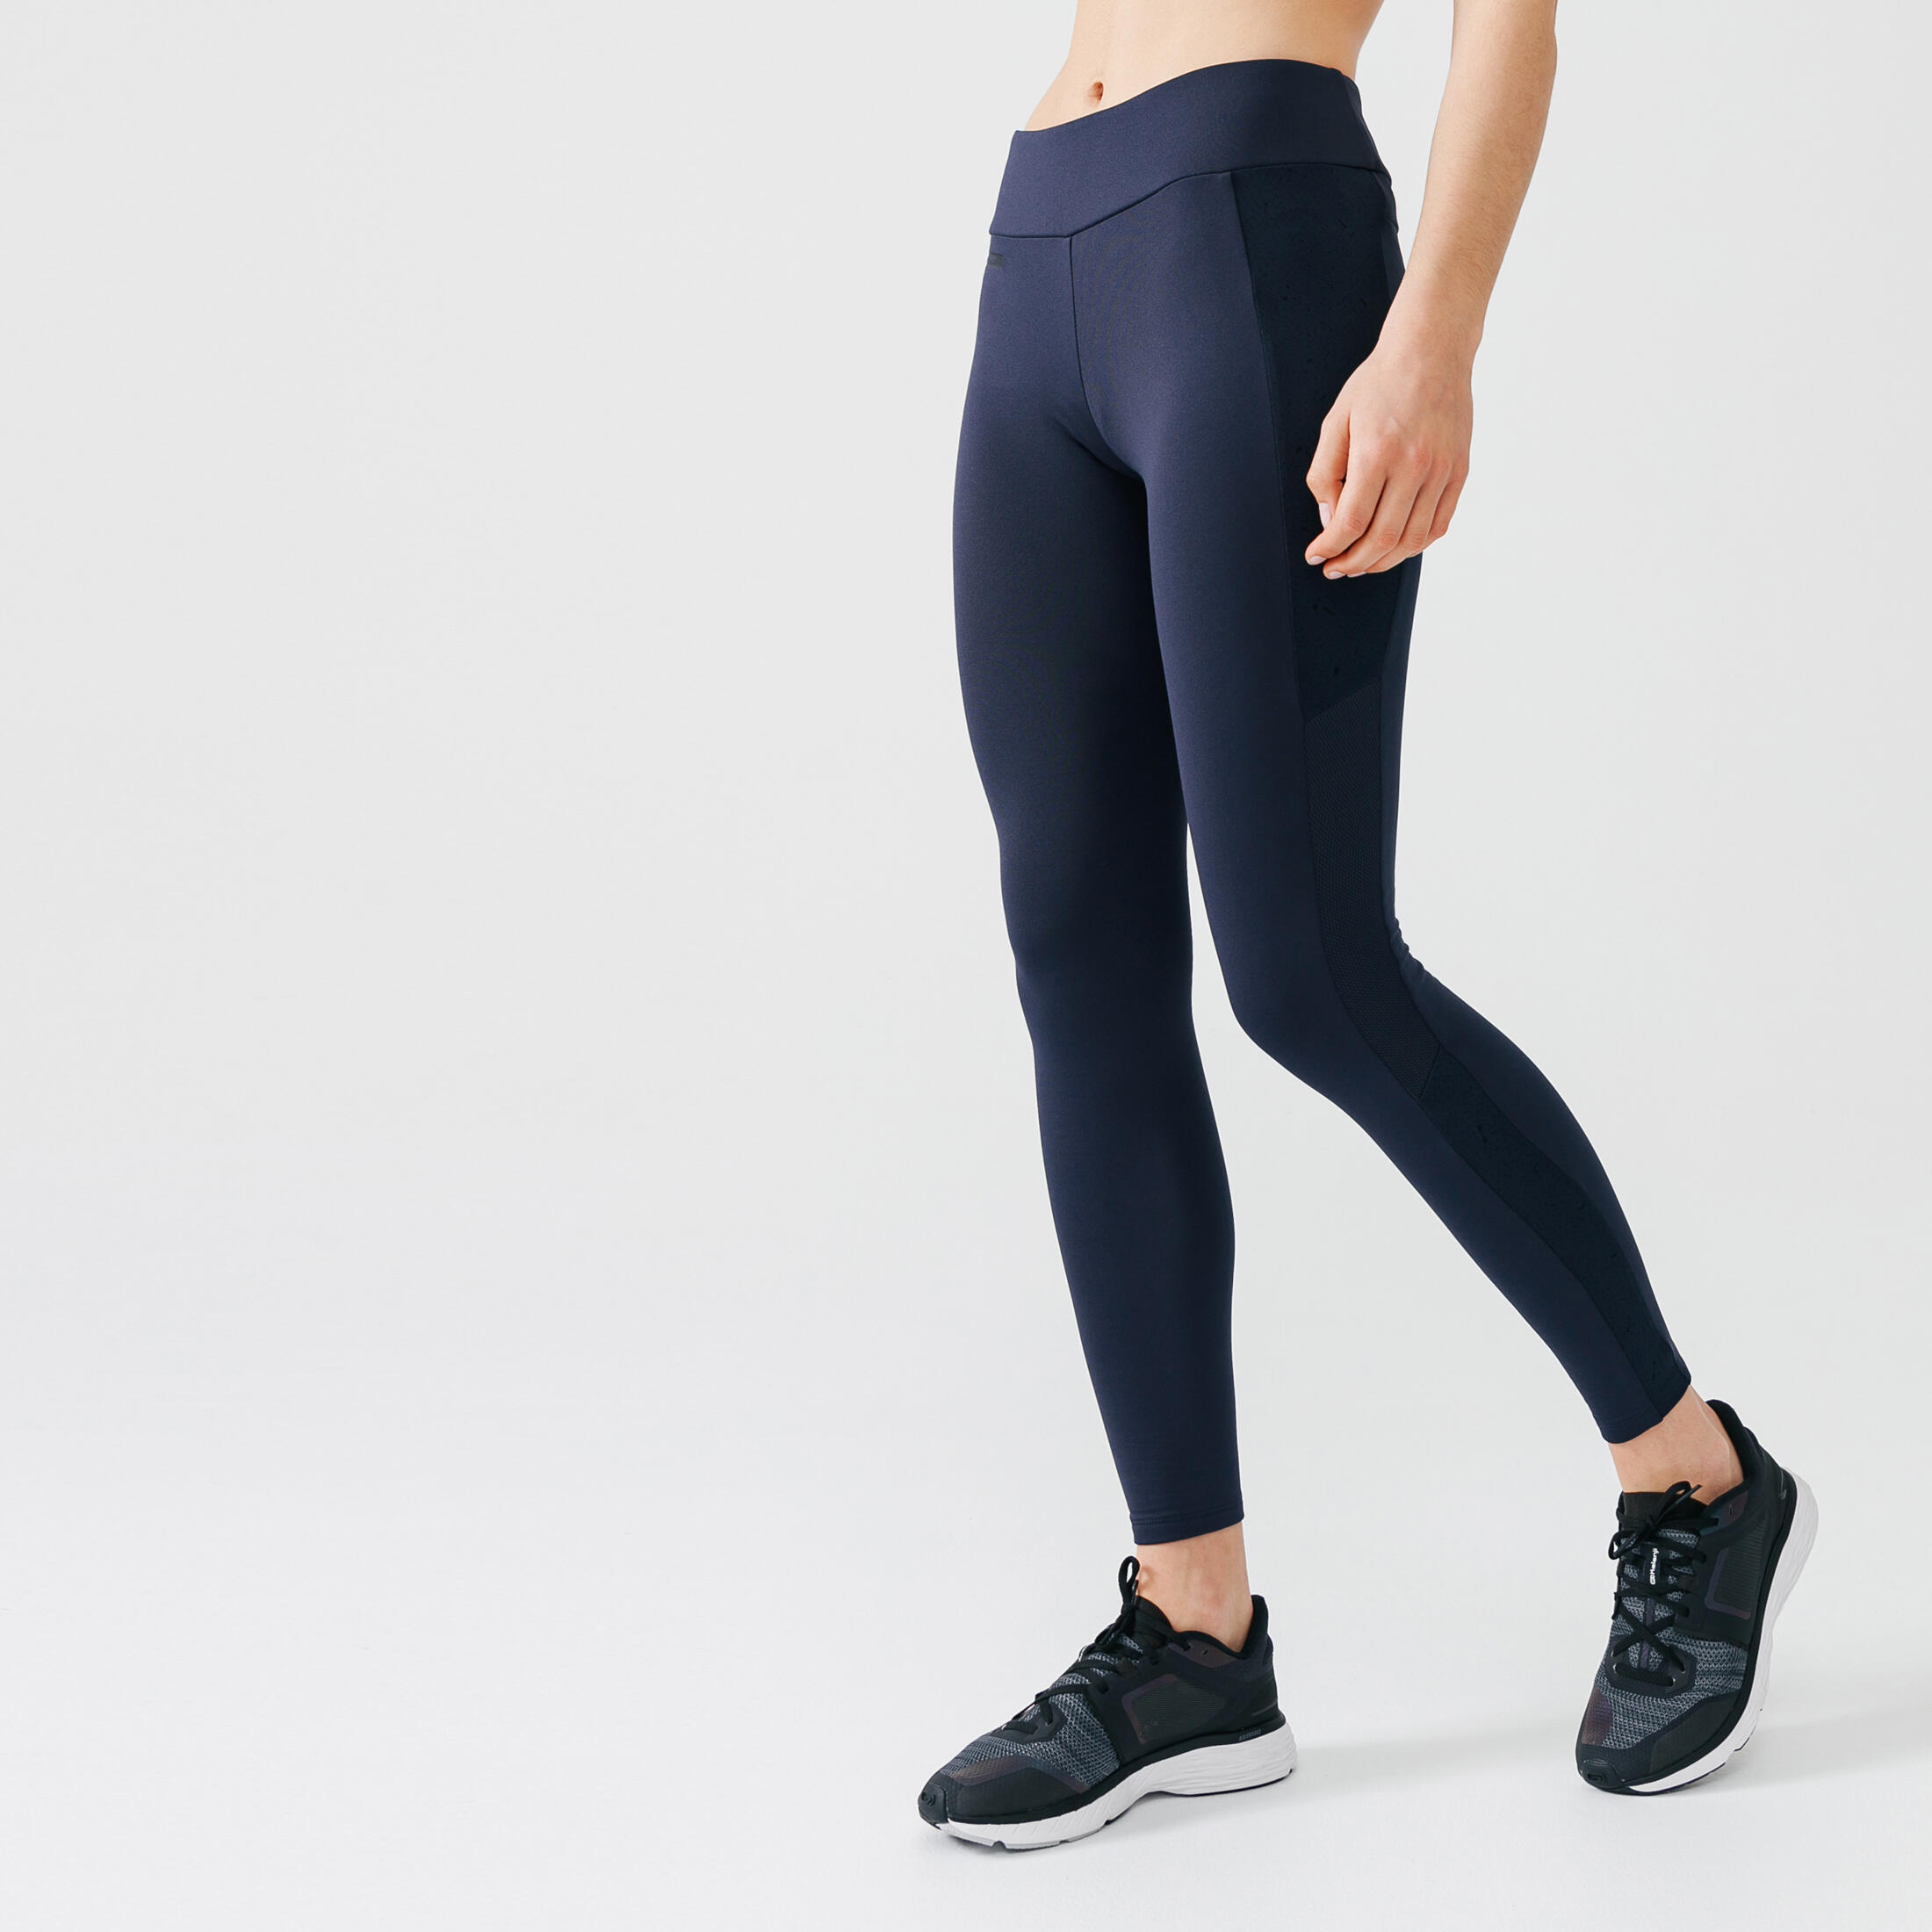 Women's long running leggings Warm+ - dark blue 1/9